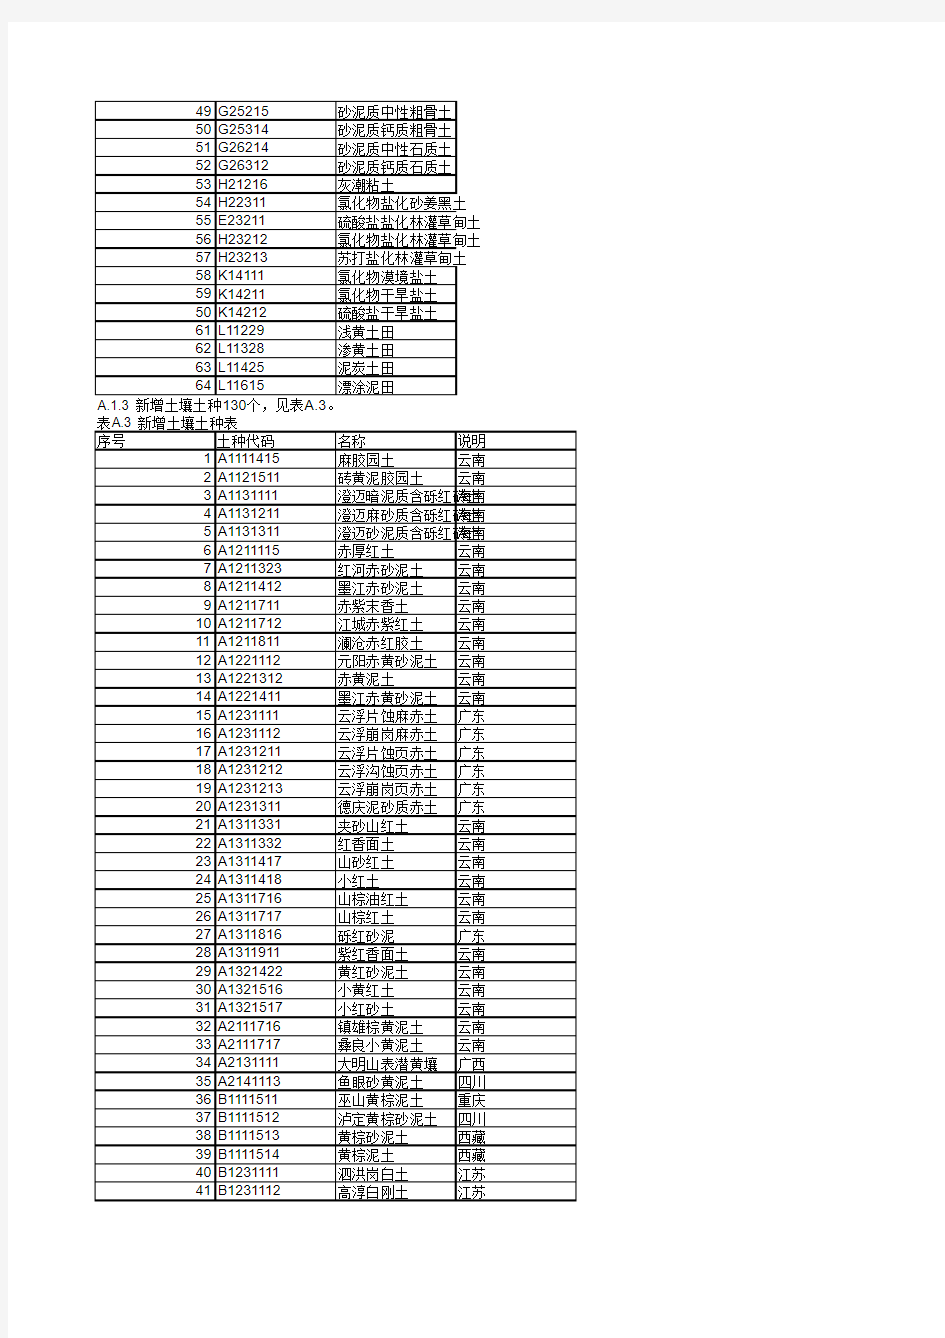 中国土壤分类代码对照表 GBT 19276-2009 对比 GBT 19276-2000 变更表